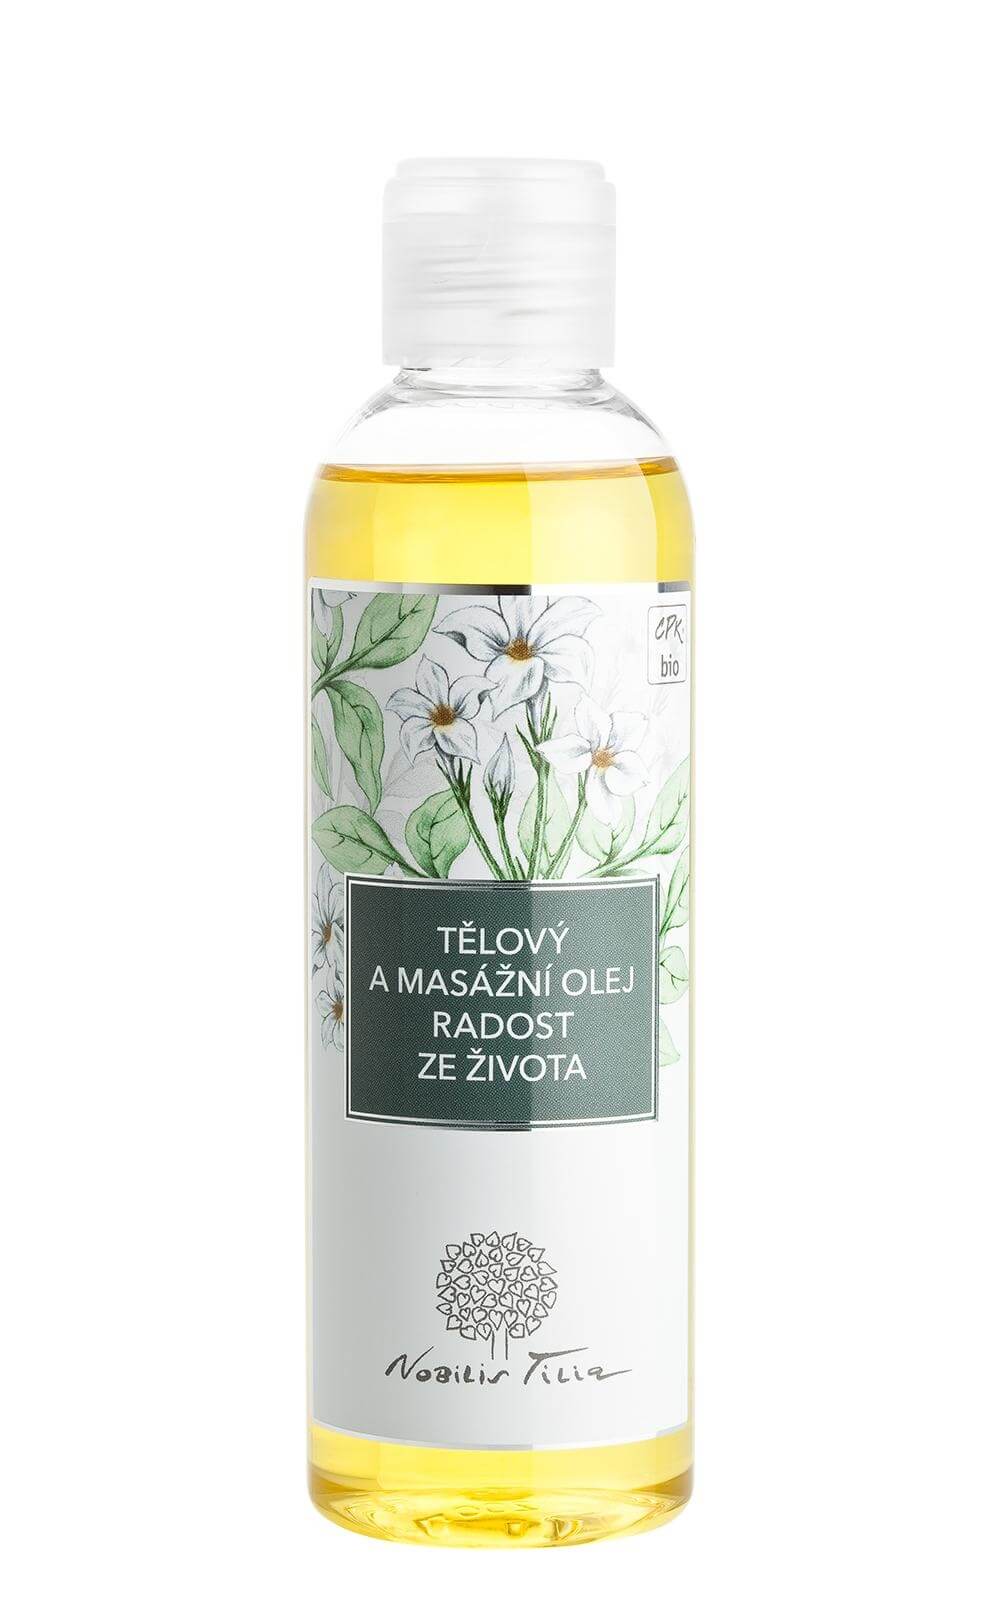 Nobilis Tilia Tělový a masážní olej Radost ze života 200 ml